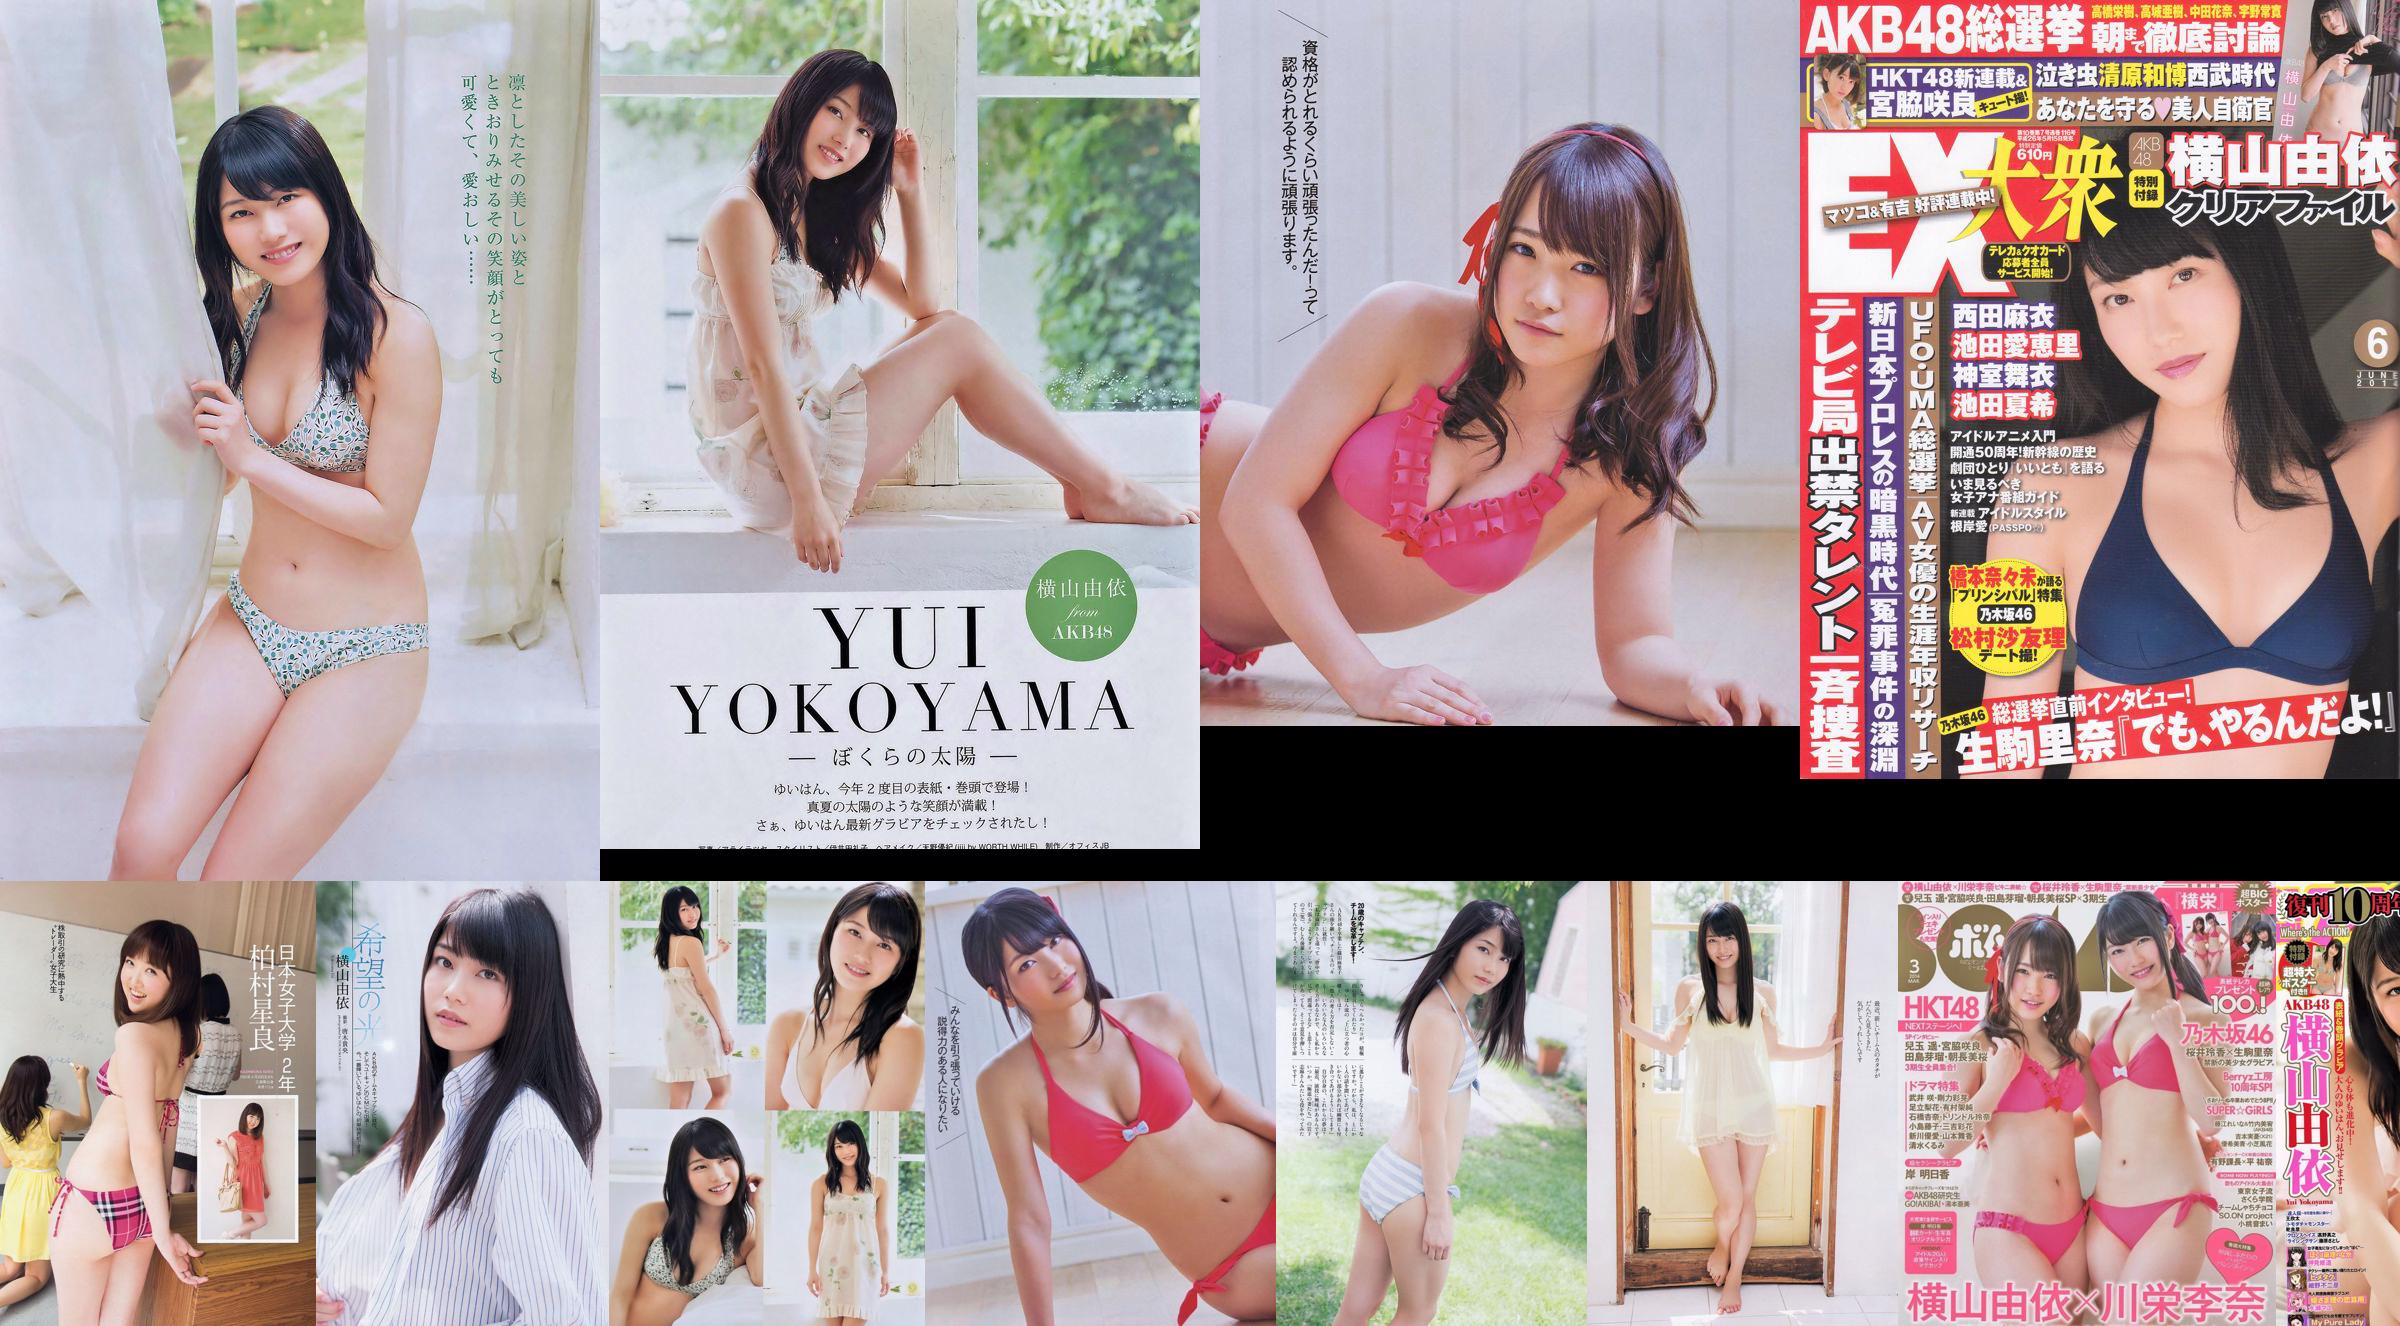 [EX Taishu] Yokoyama Yui, Miyawaki Sakura, Matsumura Sa Yuri 2014 nr 06 Photo Magazine No.8c385f Pagina 25